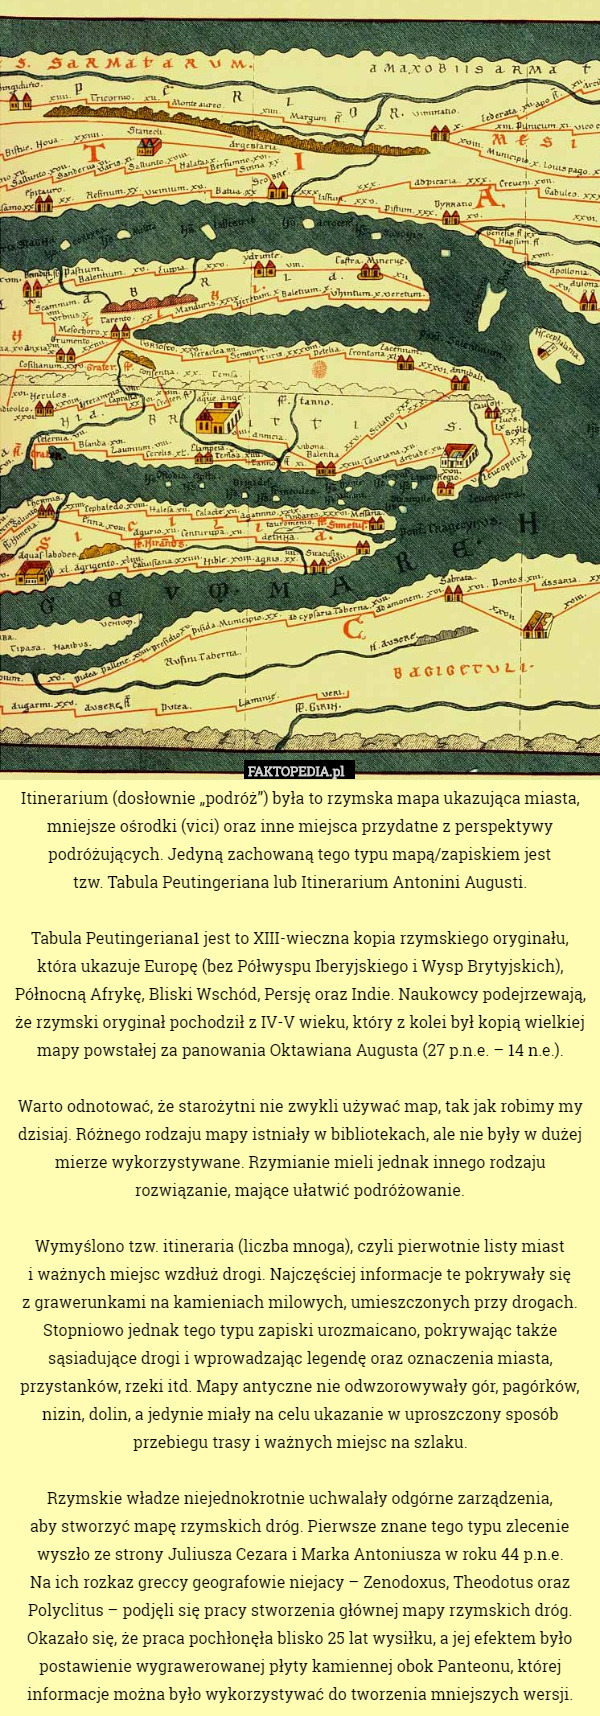 Itinerarium (dosłownie „podróż”) była to rzymska mapa ukazująca miasta, mniejsze ośrodki (vici) oraz inne miejsca przydatne z perspektywy podróżujących. Jedyną zachowaną tego typu mapą/zapiskiem jest
 tzw. Tabula Peutingeriana lub Itinerarium Antonini Augusti.

Tabula Peutingeriana1 jest to XIII-wieczna kopia rzymskiego oryginału, która ukazuje Europę (bez Półwyspu Iberyjskiego i Wysp Brytyjskich), Północną Afrykę, Bliski Wschód, Persję oraz Indie. Naukowcy podejrzewają, że rzymski oryginał pochodził z IV-V wieku, który z kolei był kopią wielkiej mapy powstałej za panowania Oktawiana Augusta (27 p.n.e. – 14 n.e.).

Warto odnotować, że starożytni nie zwykli używać map, tak jak robimy my dzisiaj. Różnego rodzaju mapy istniały w bibliotekach, ale nie były w dużej mierze wykorzystywane. Rzymianie mieli jednak innego rodzaju rozwiązanie, mające ułatwić podróżowanie.

Wymyślono tzw. itineraria (liczba mnoga), czyli pierwotnie listy miast
 i ważnych miejsc wzdłuż drogi. Najczęściej informacje te pokrywały się
 z grawerunkami na kamieniach milowych, umieszczonych przy drogach. Stopniowo jednak tego typu zapiski urozmaicano, pokrywając także sąsiadujące drogi i wprowadzając legendę oraz oznaczenia miasta, przystanków, rzeki itd. Mapy antyczne nie odwzorowywały gór, pagórków, nizin, dolin, a jedynie miały na celu ukazanie w uproszczony sposób przebiegu trasy i ważnych miejsc na szlaku.

Rzymskie władze niejednokrotnie uchwalały odgórne zarządzenia,
 aby stworzyć mapę rzymskich dróg. Pierwsze znane tego typu zlecenie wyszło ze strony Juliusza Cezara i Marka Antoniusza w roku 44 p.n.e.
 Na ich rozkaz greccy geografowie niejacy – Zenodoxus, Theodotus oraz Polyclitus – podjęli się pracy stworzenia głównej mapy rzymskich dróg.
 Okazało się, że praca pochłonęła blisko 25 lat wysiłku, a jej efektem było postawienie wygrawerowanej płyty kamiennej obok Panteonu, której informacje można było wykorzystywać do tworzenia mniejszych wersji. 